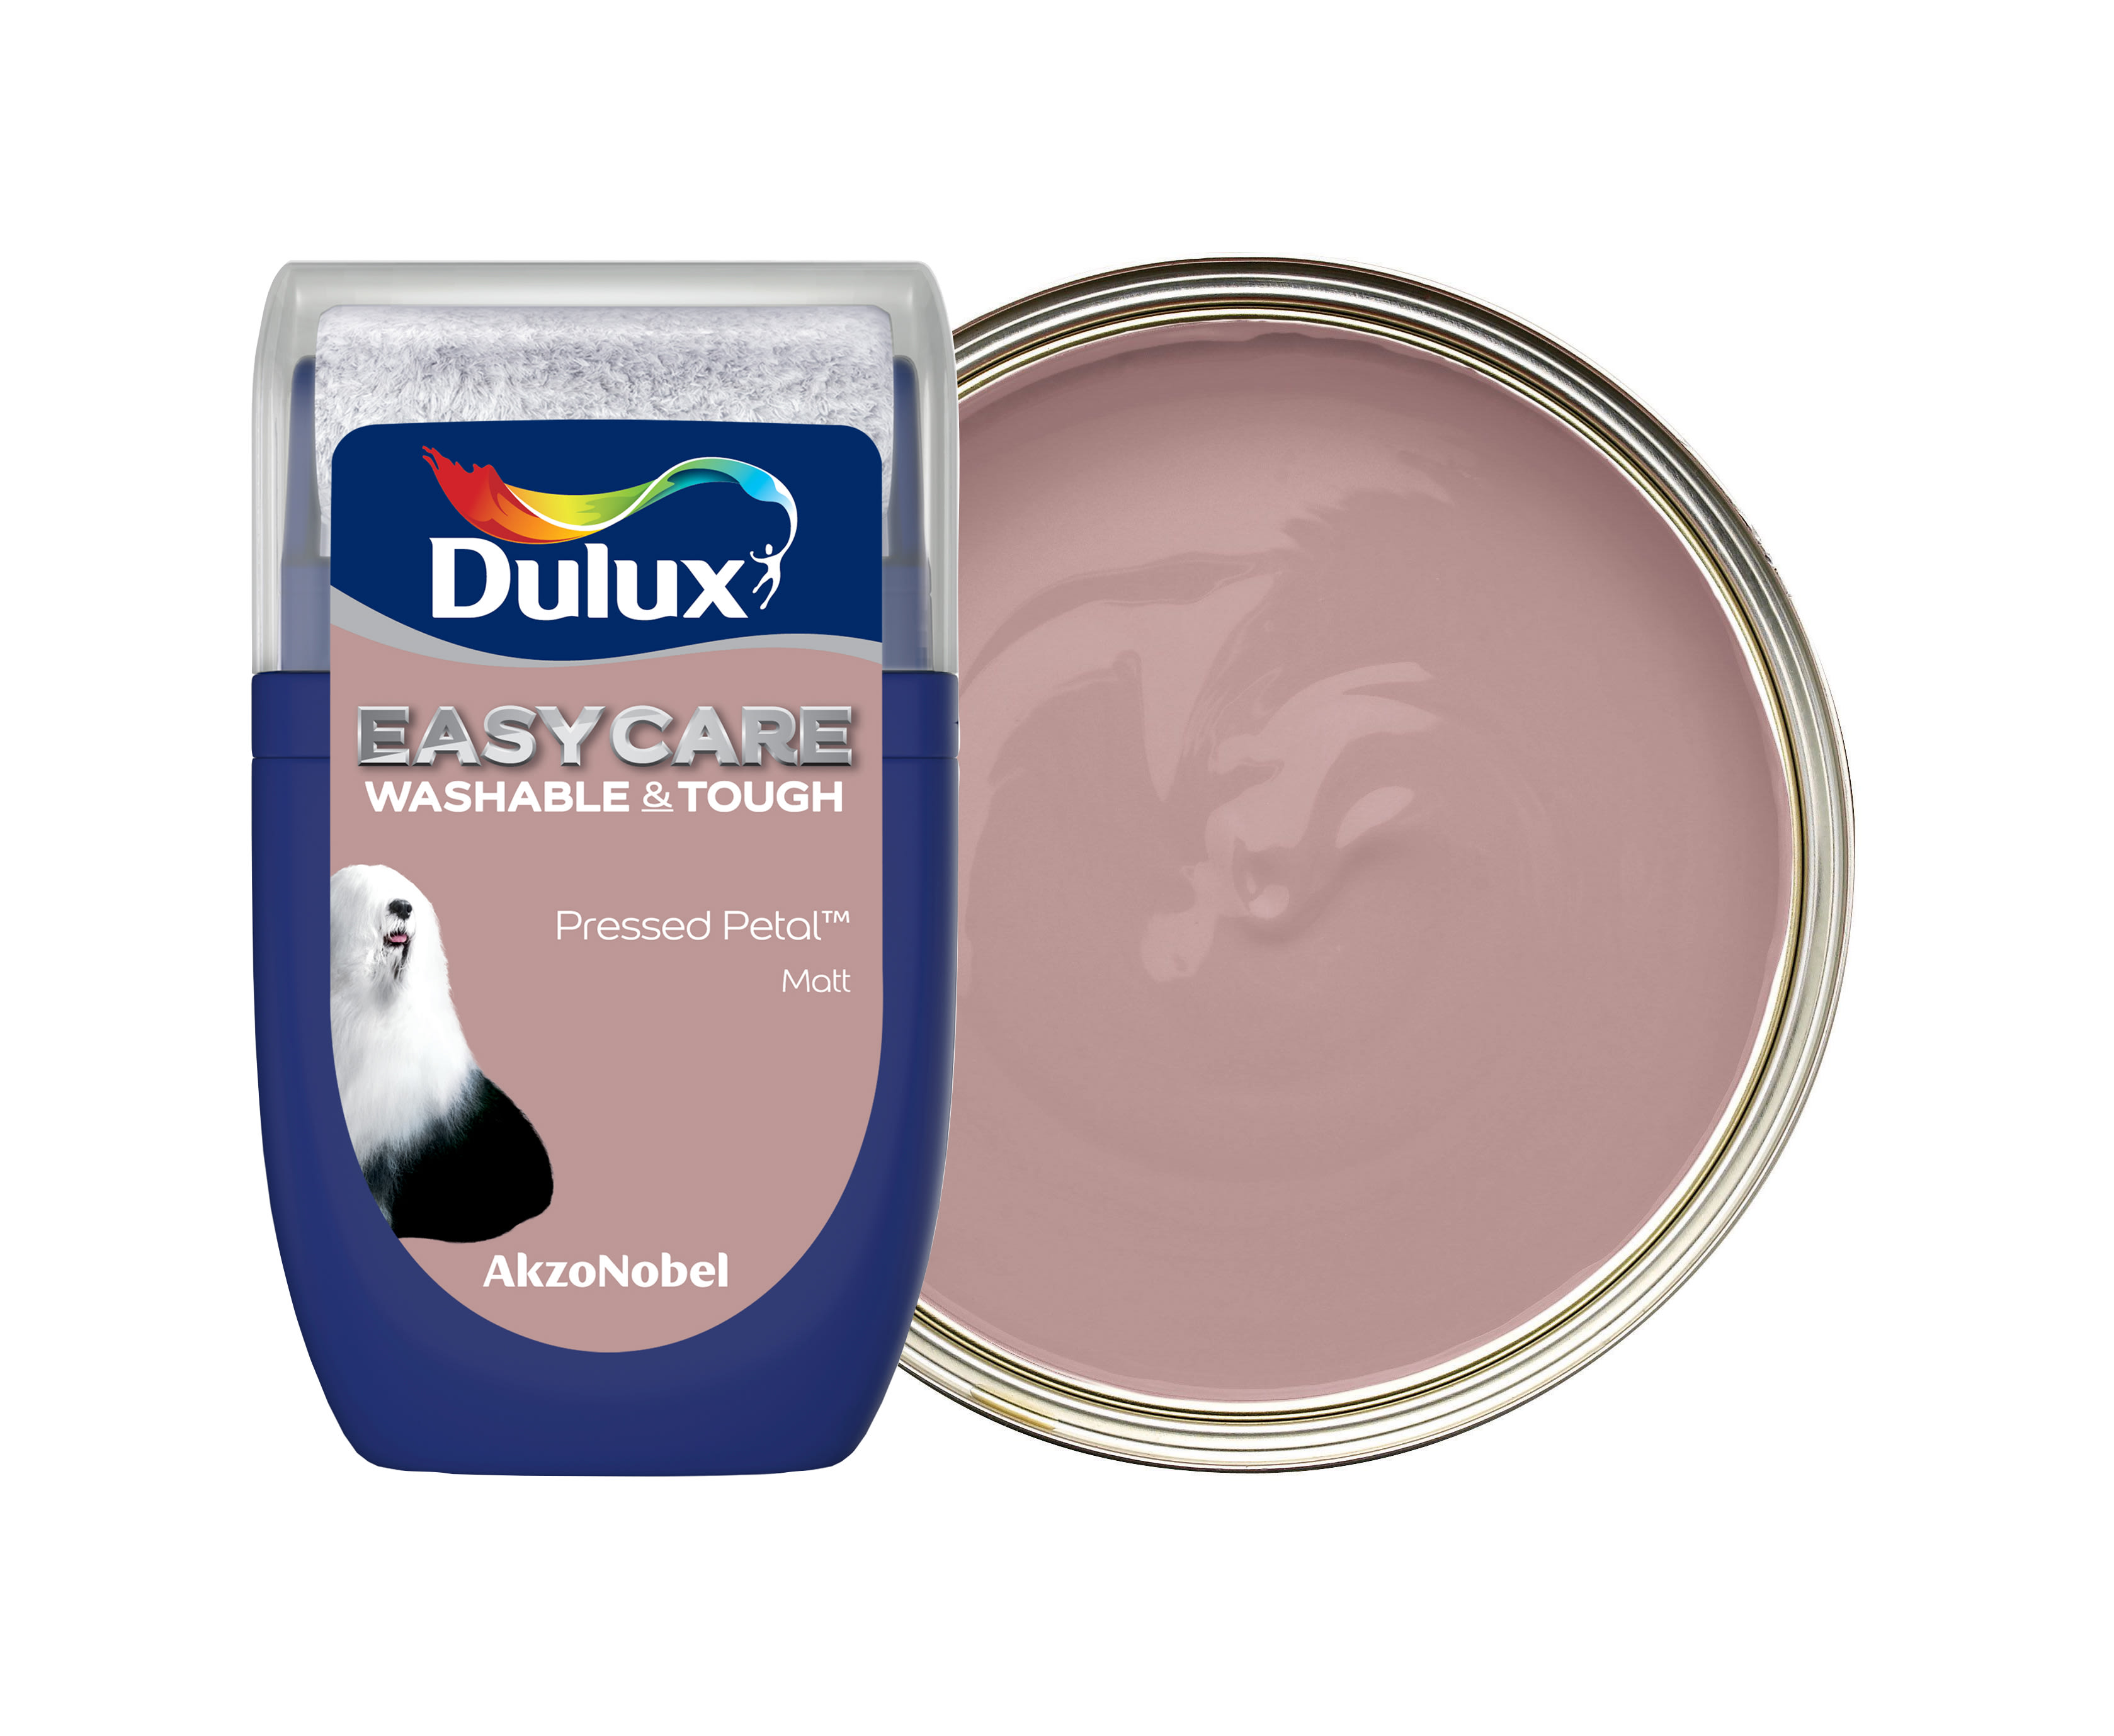 Dulux Easycare Washable & Tough Paint Tester Pot